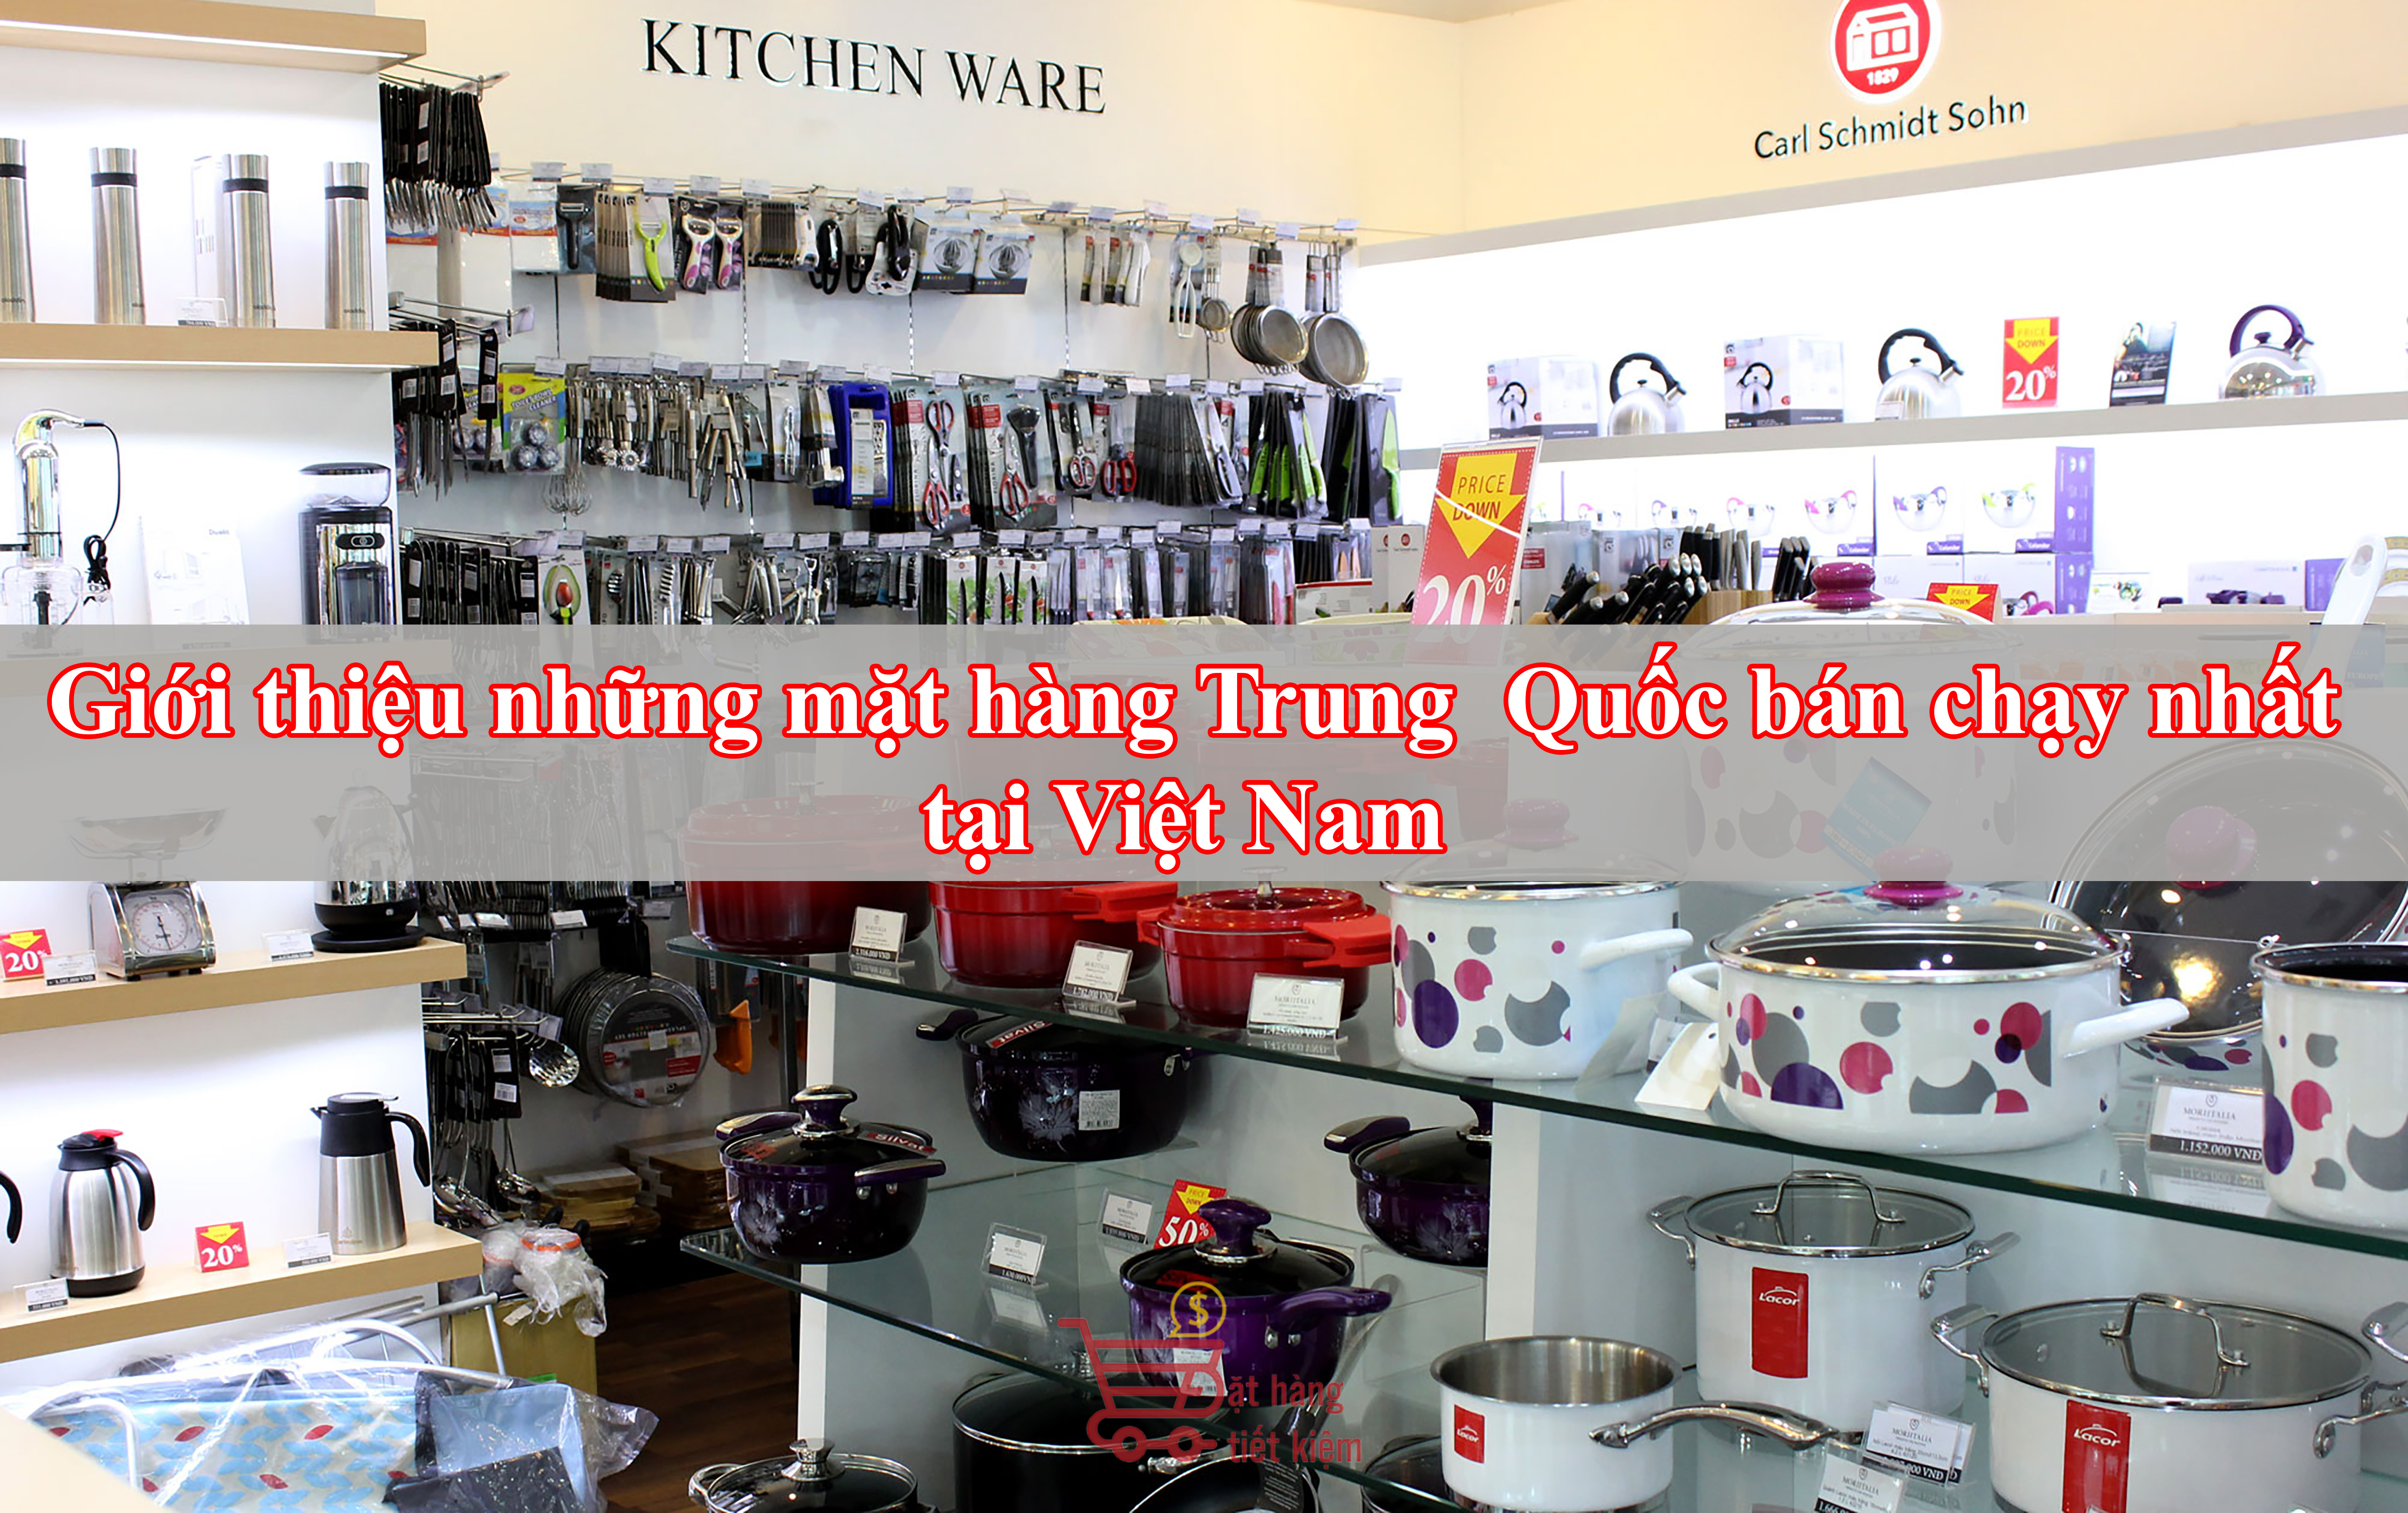 Giới thiệu những mặt hàng Trung Quốc bán chạy nhất tại Việt Nam